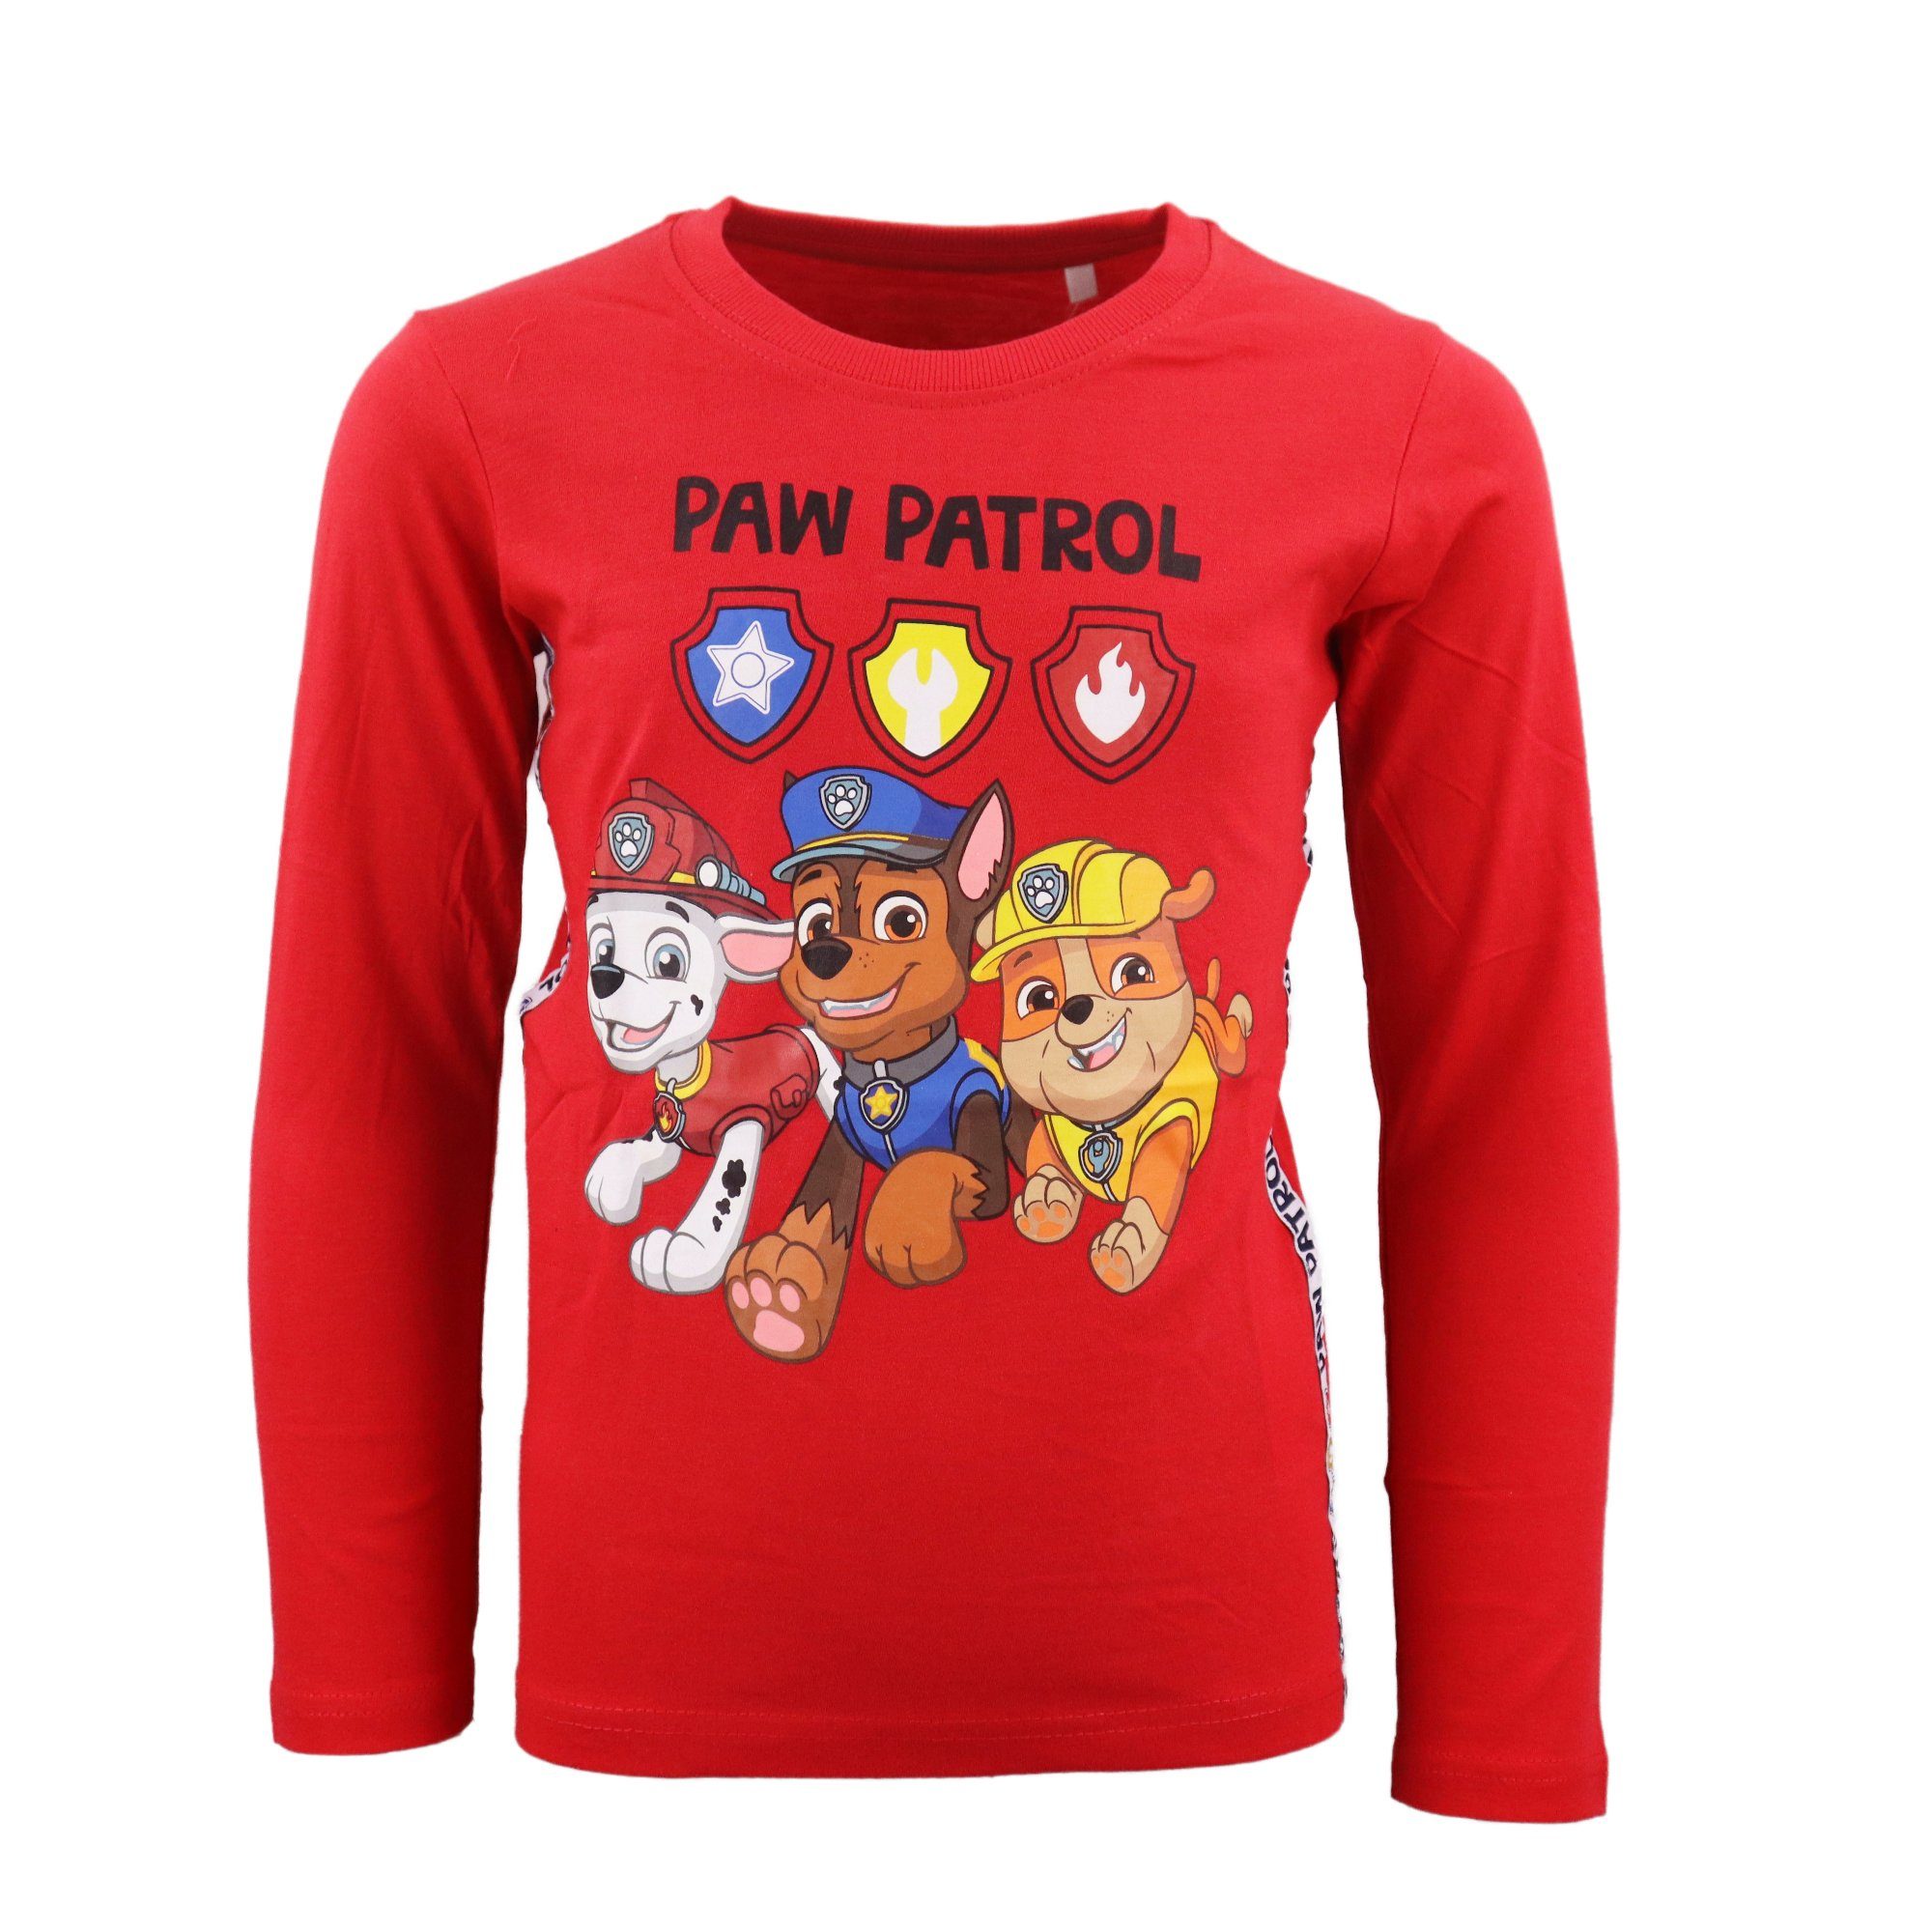 PAW PATROL Langarmshirt Paw Patrol Chase Marshall Kinder Shirt Gr. 98 bis 128, 100% Baumwolle Rot | Rundhalsshirts